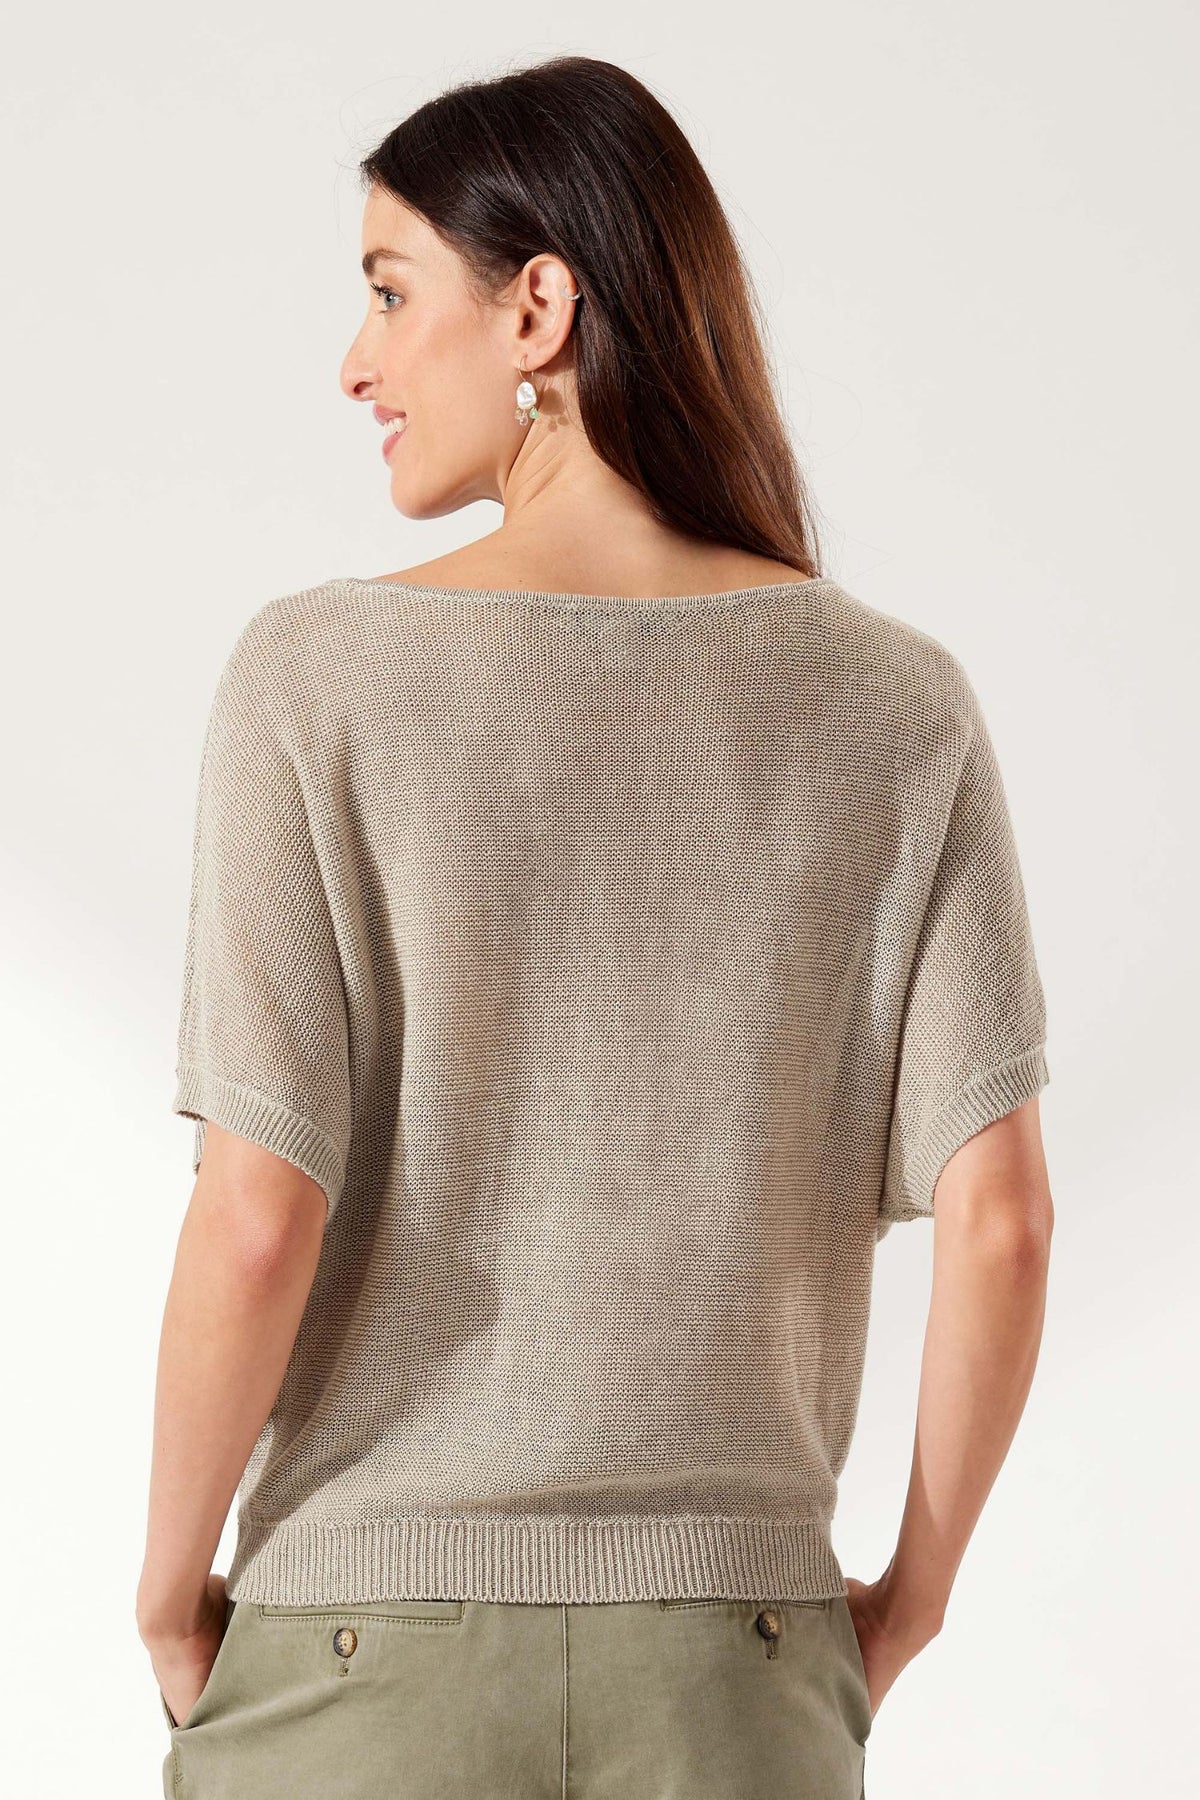 Tommy Bahama Cedar Linen Sweater - Style SW420920, back